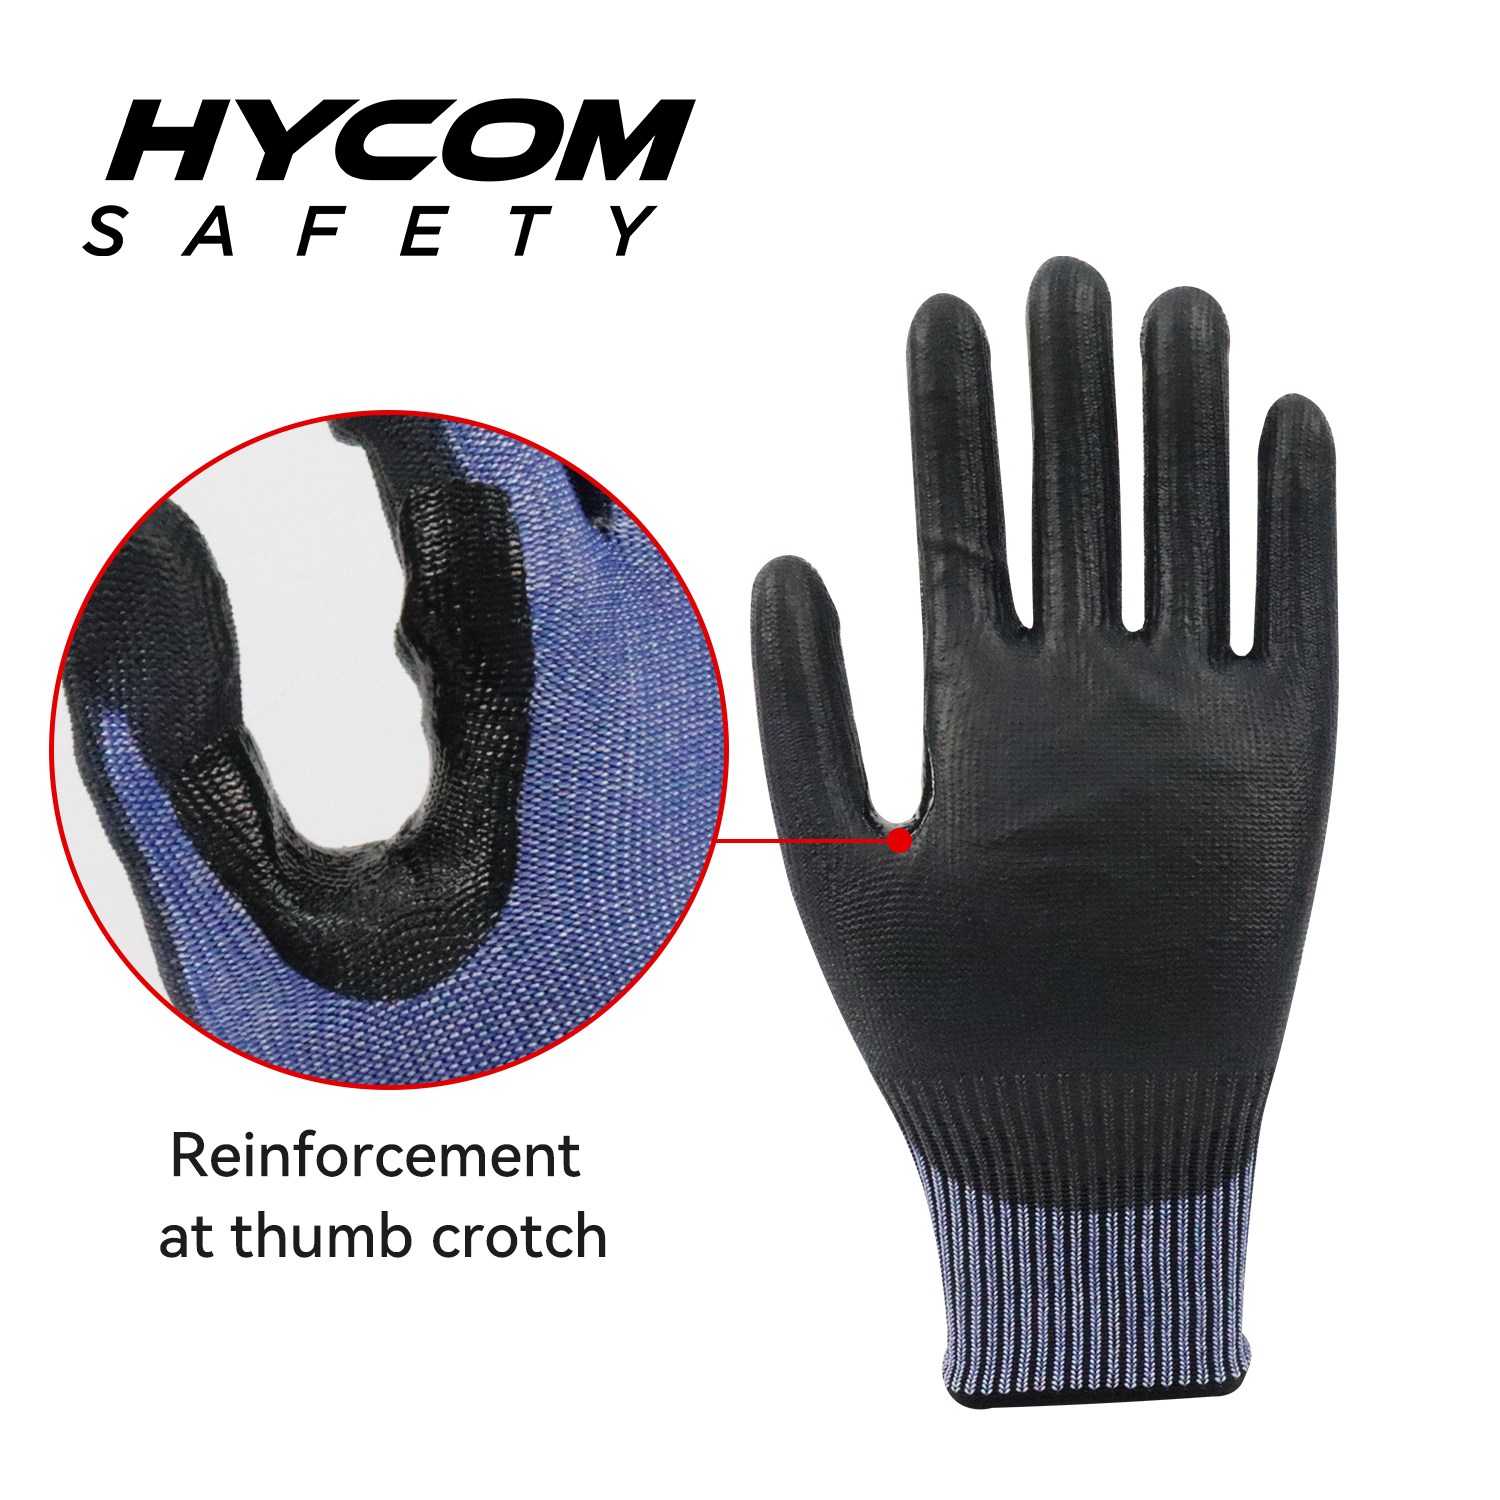 HYCOM 13G ANSI 4schnittfester Handschuh mit Polyurethanbeschichtung auf der Handfläche